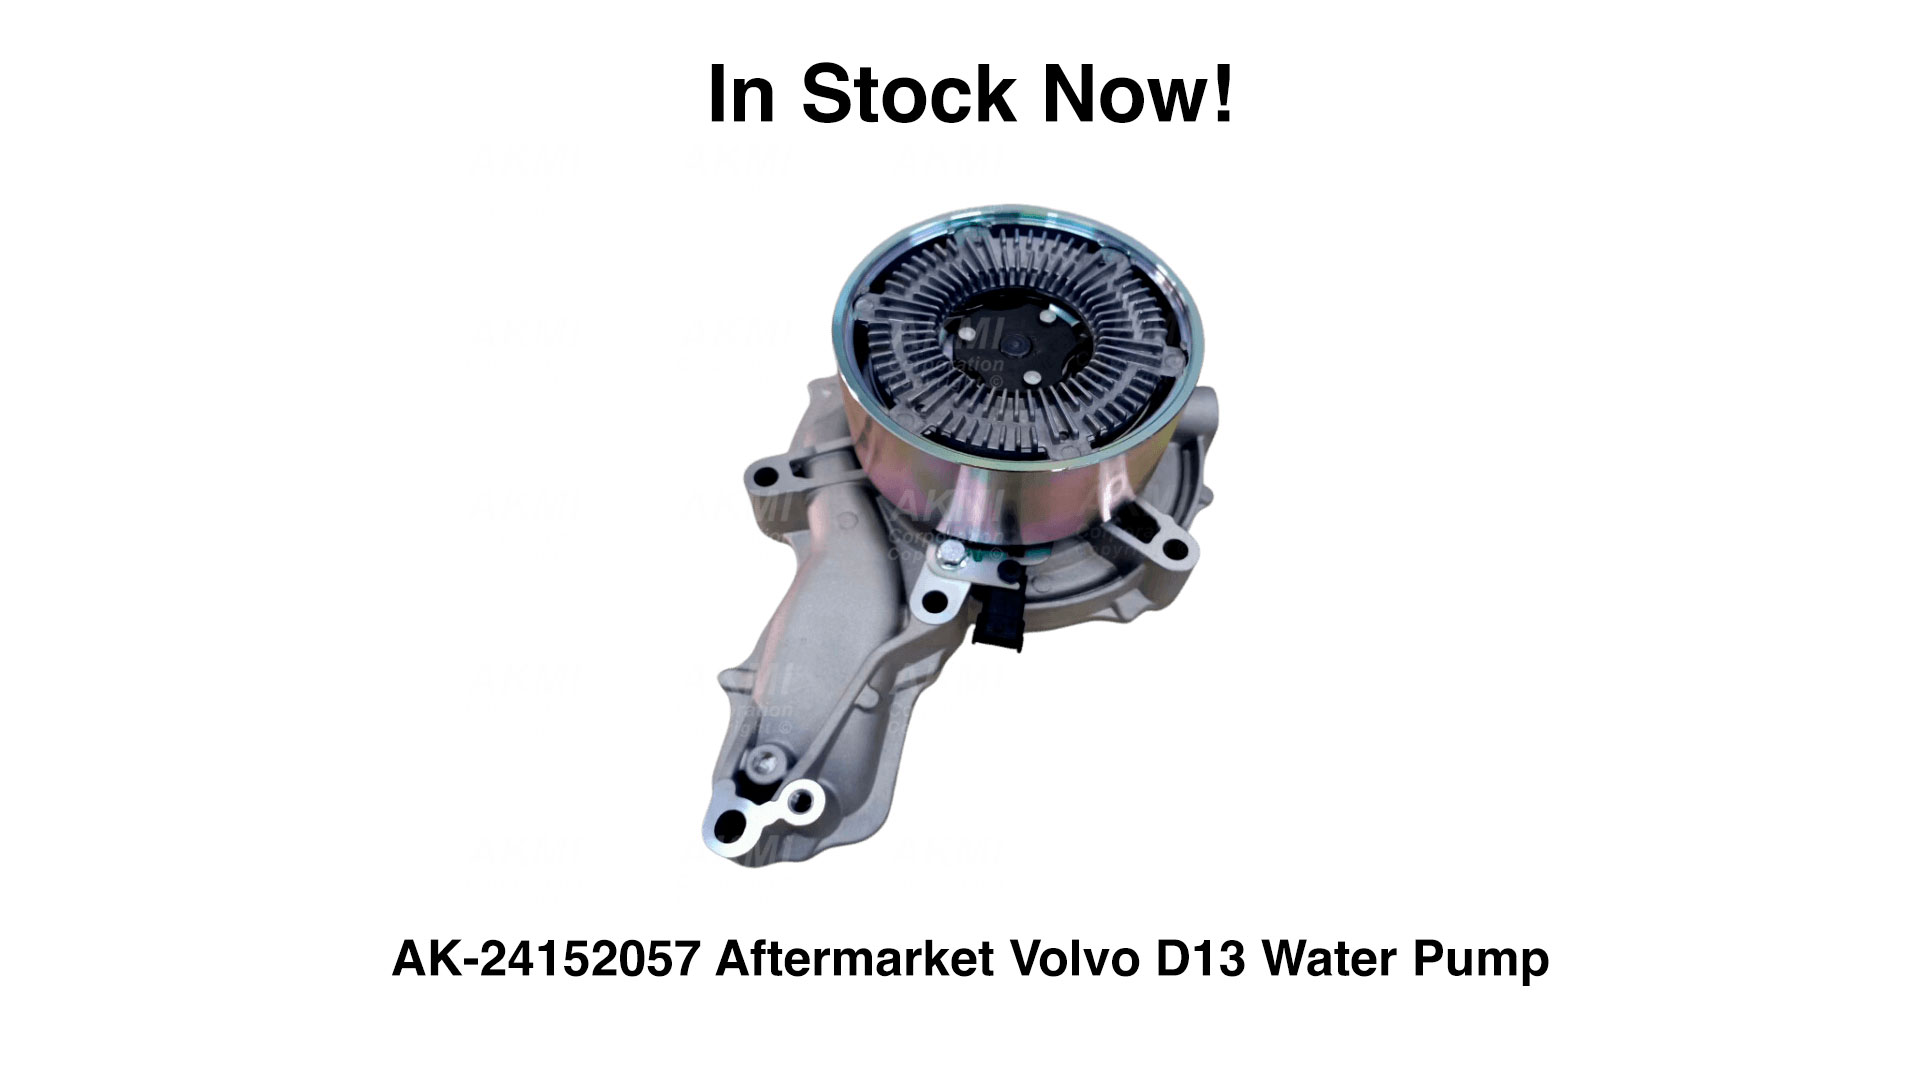 Volvo Water Pumps